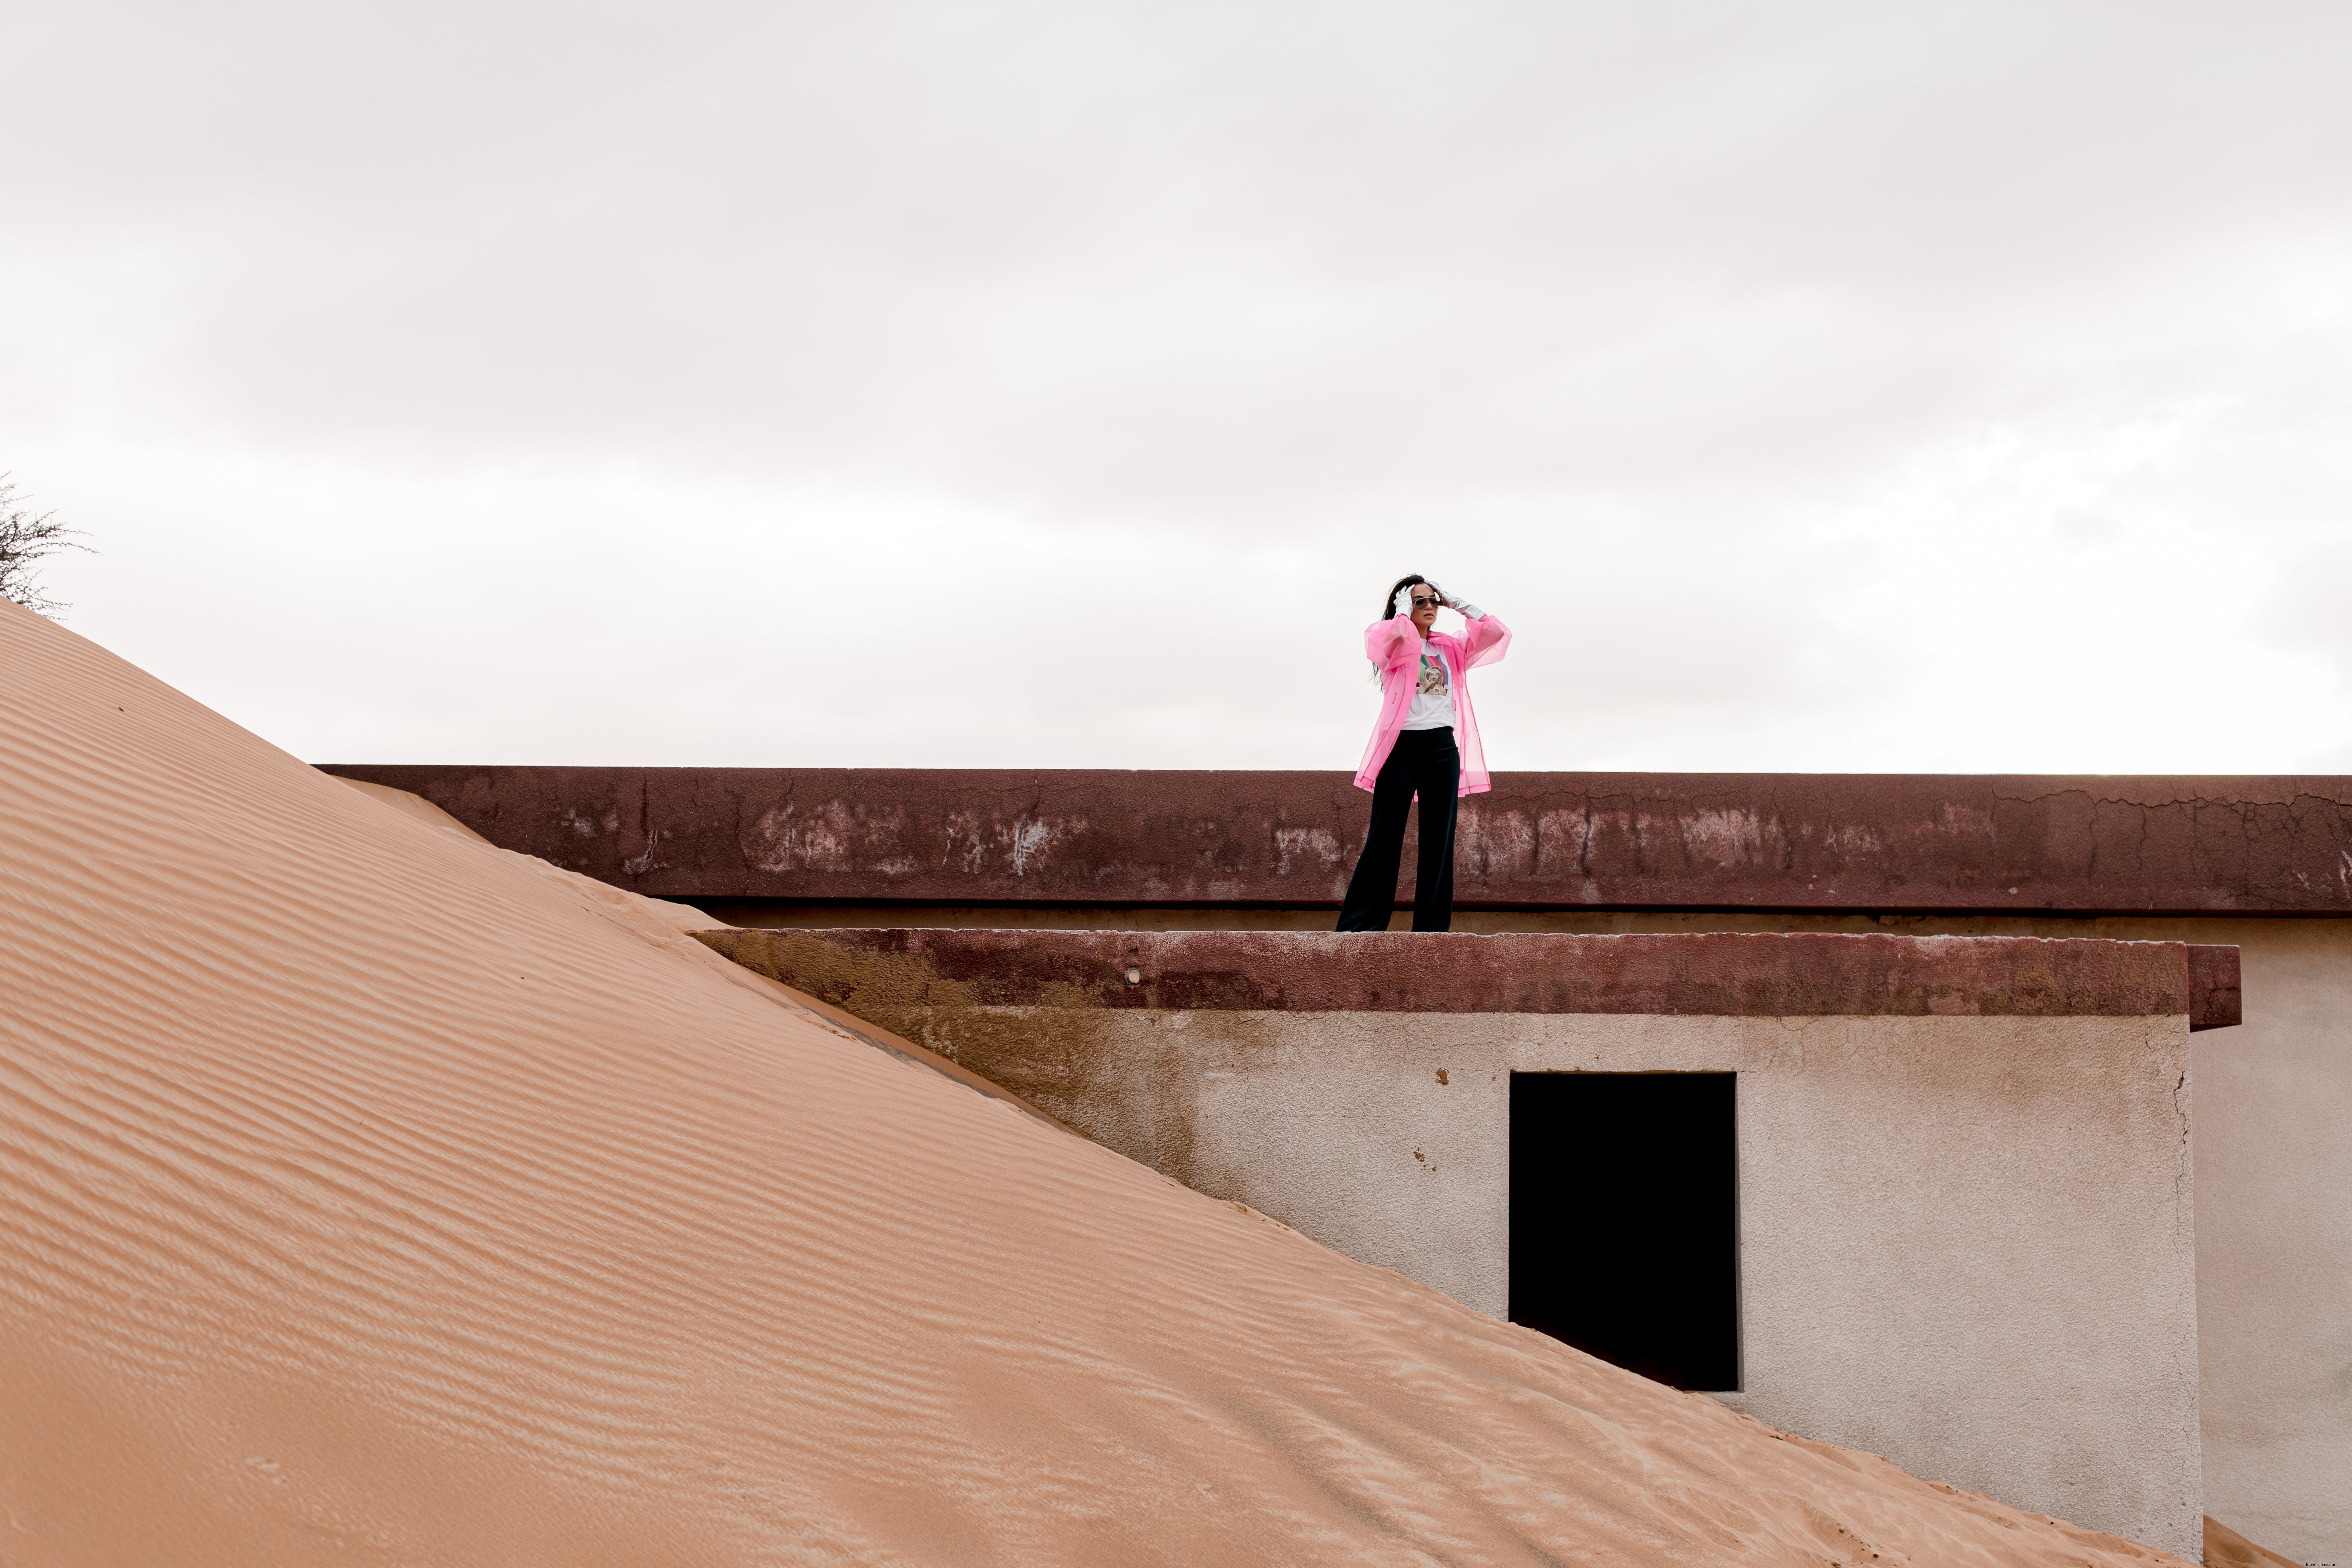 Foto de um prédio coberto de areia por uma pessoa com um casaco rosa 